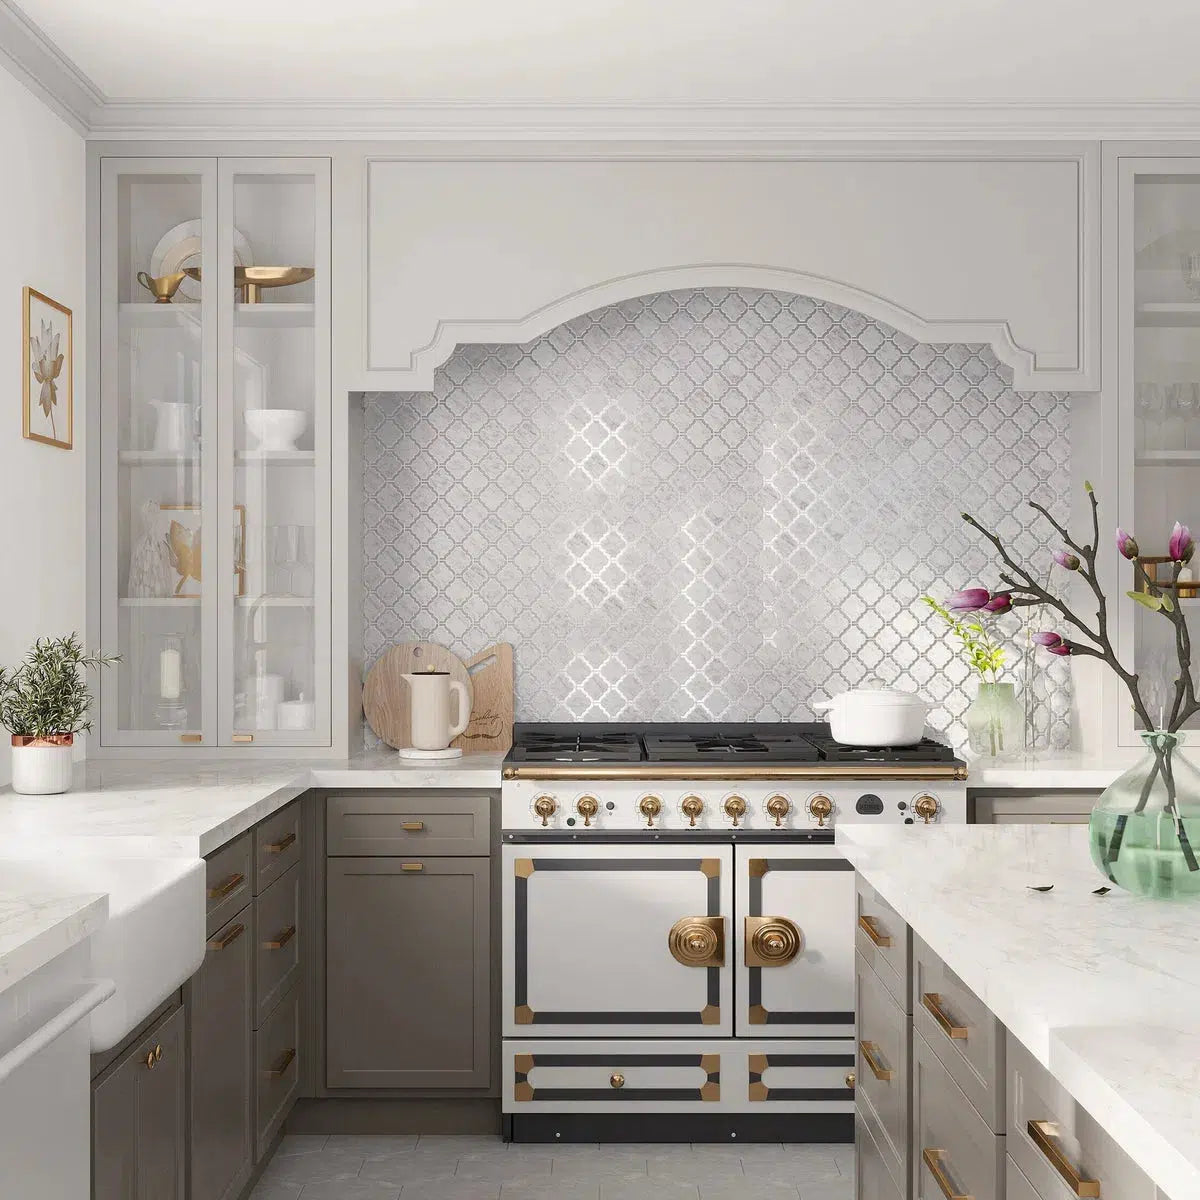 Marble and glass tile kitchen backsplash